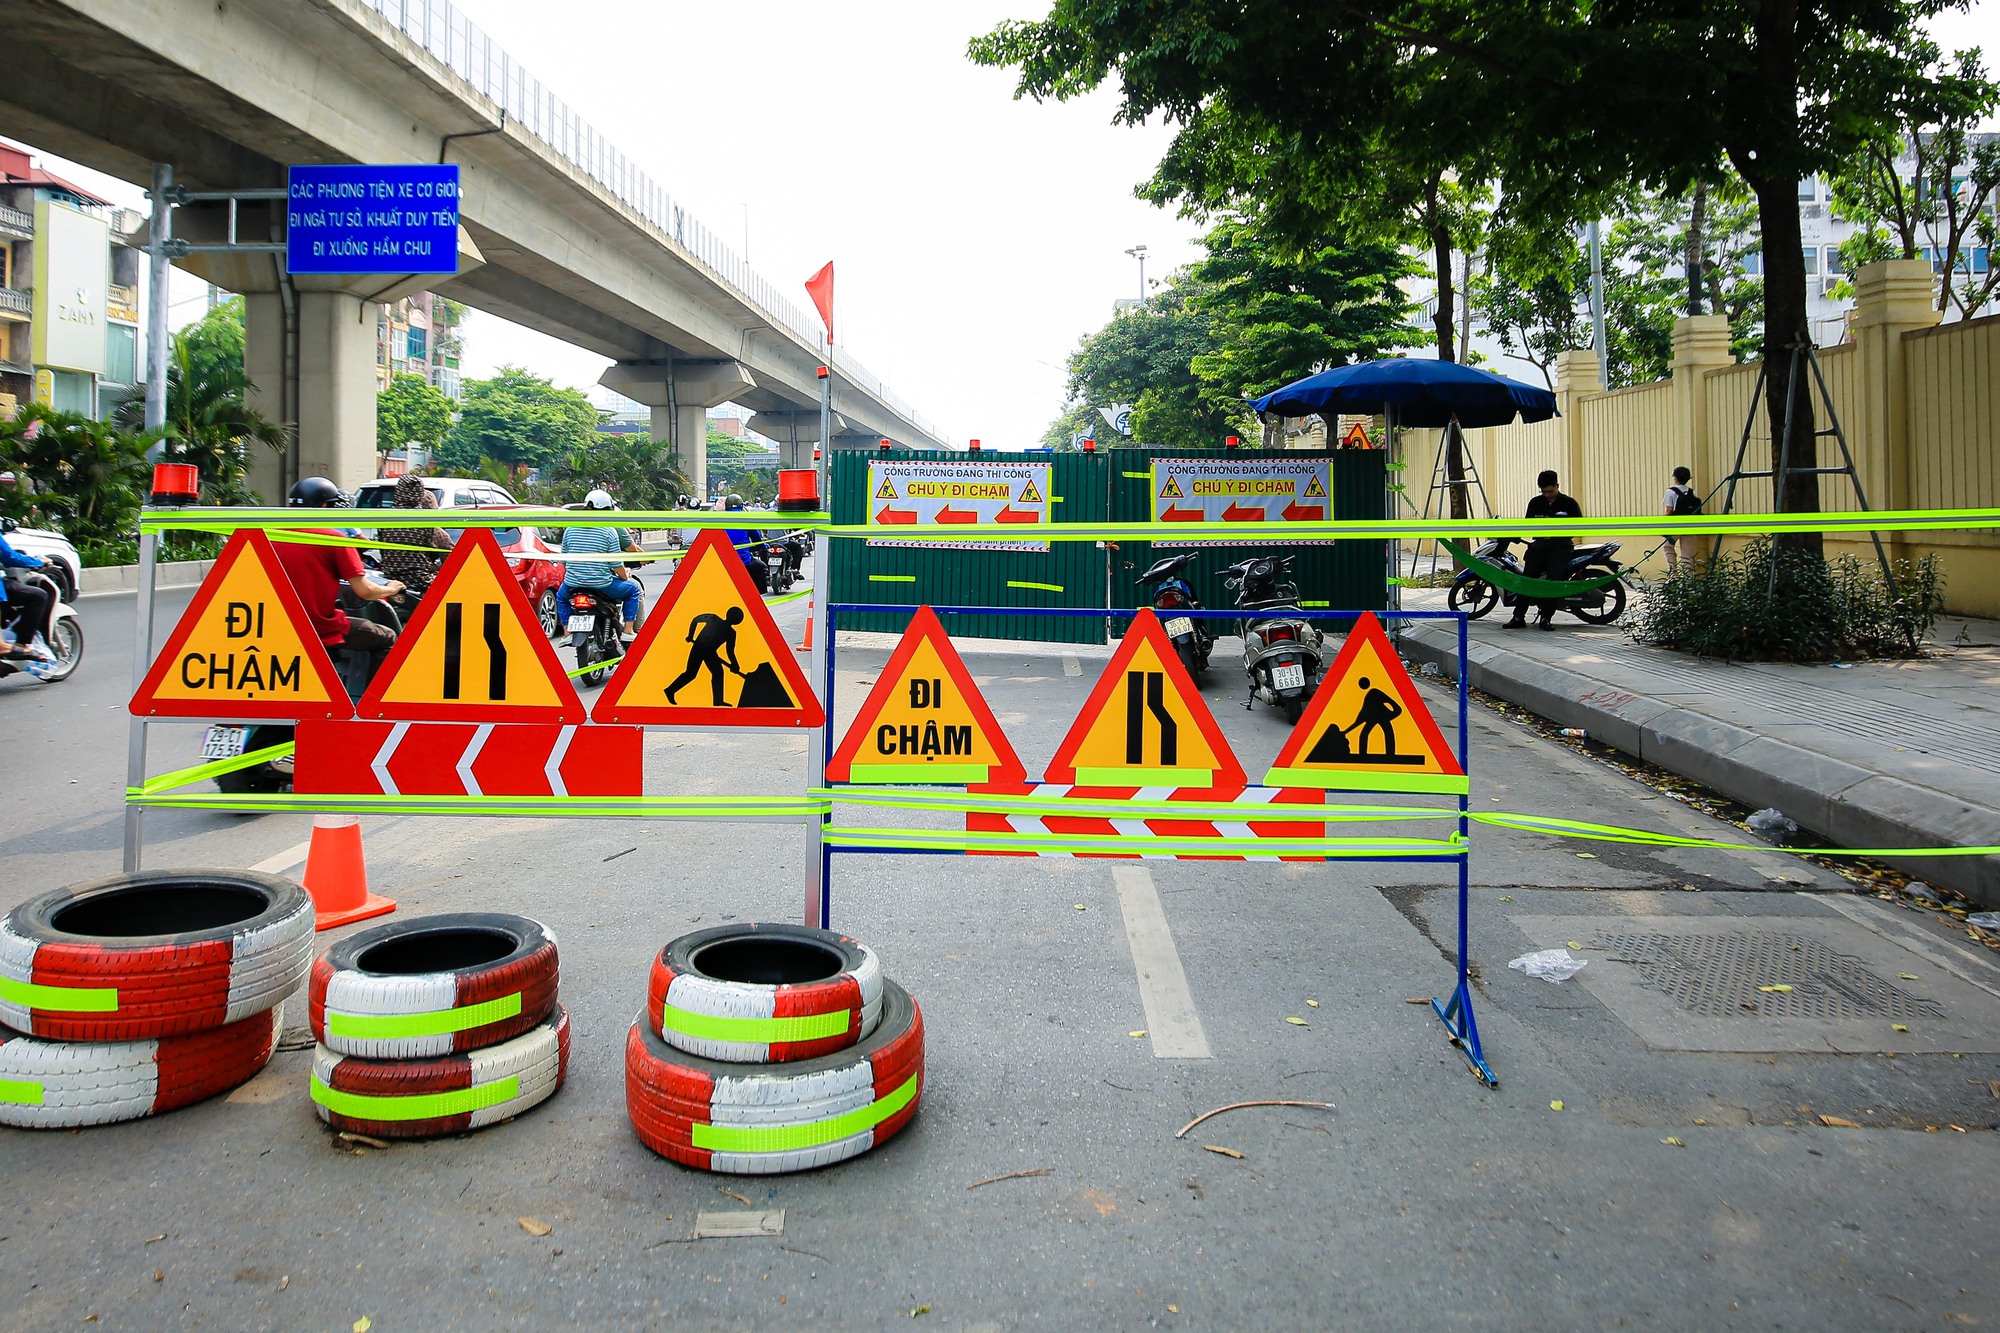 CLIP: Cận cảnh lô cốt khiến giao thông đường Nguyễn Trãi ùn ứ kéo dài giờ cao điểm - Ảnh 9.